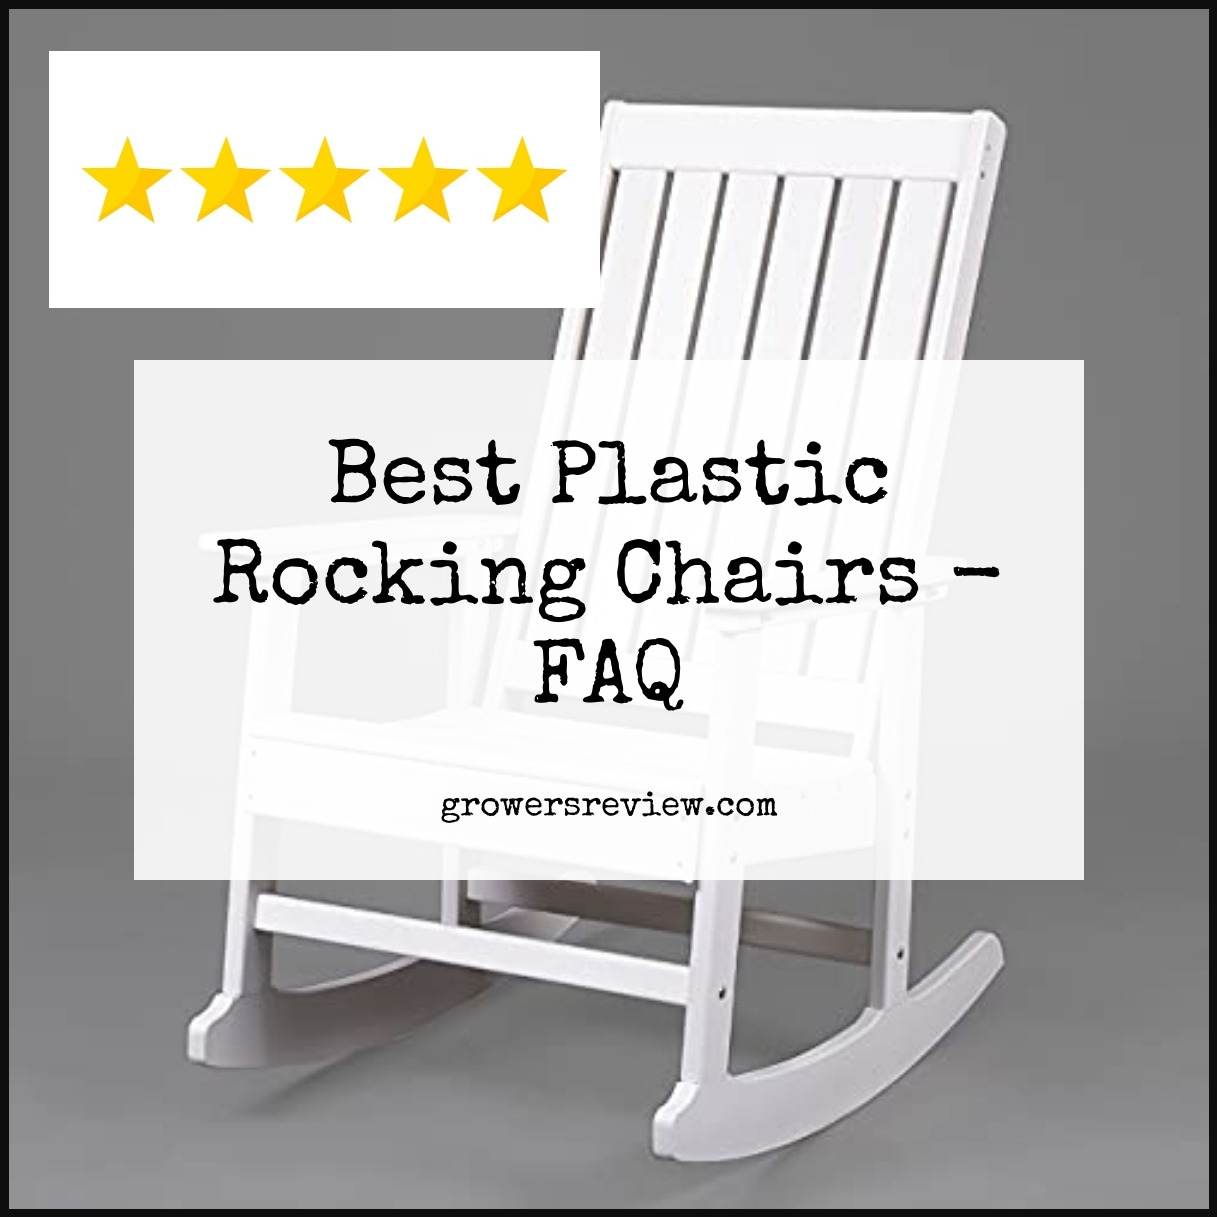 Best Plastic Rocking Chairs - FAQ